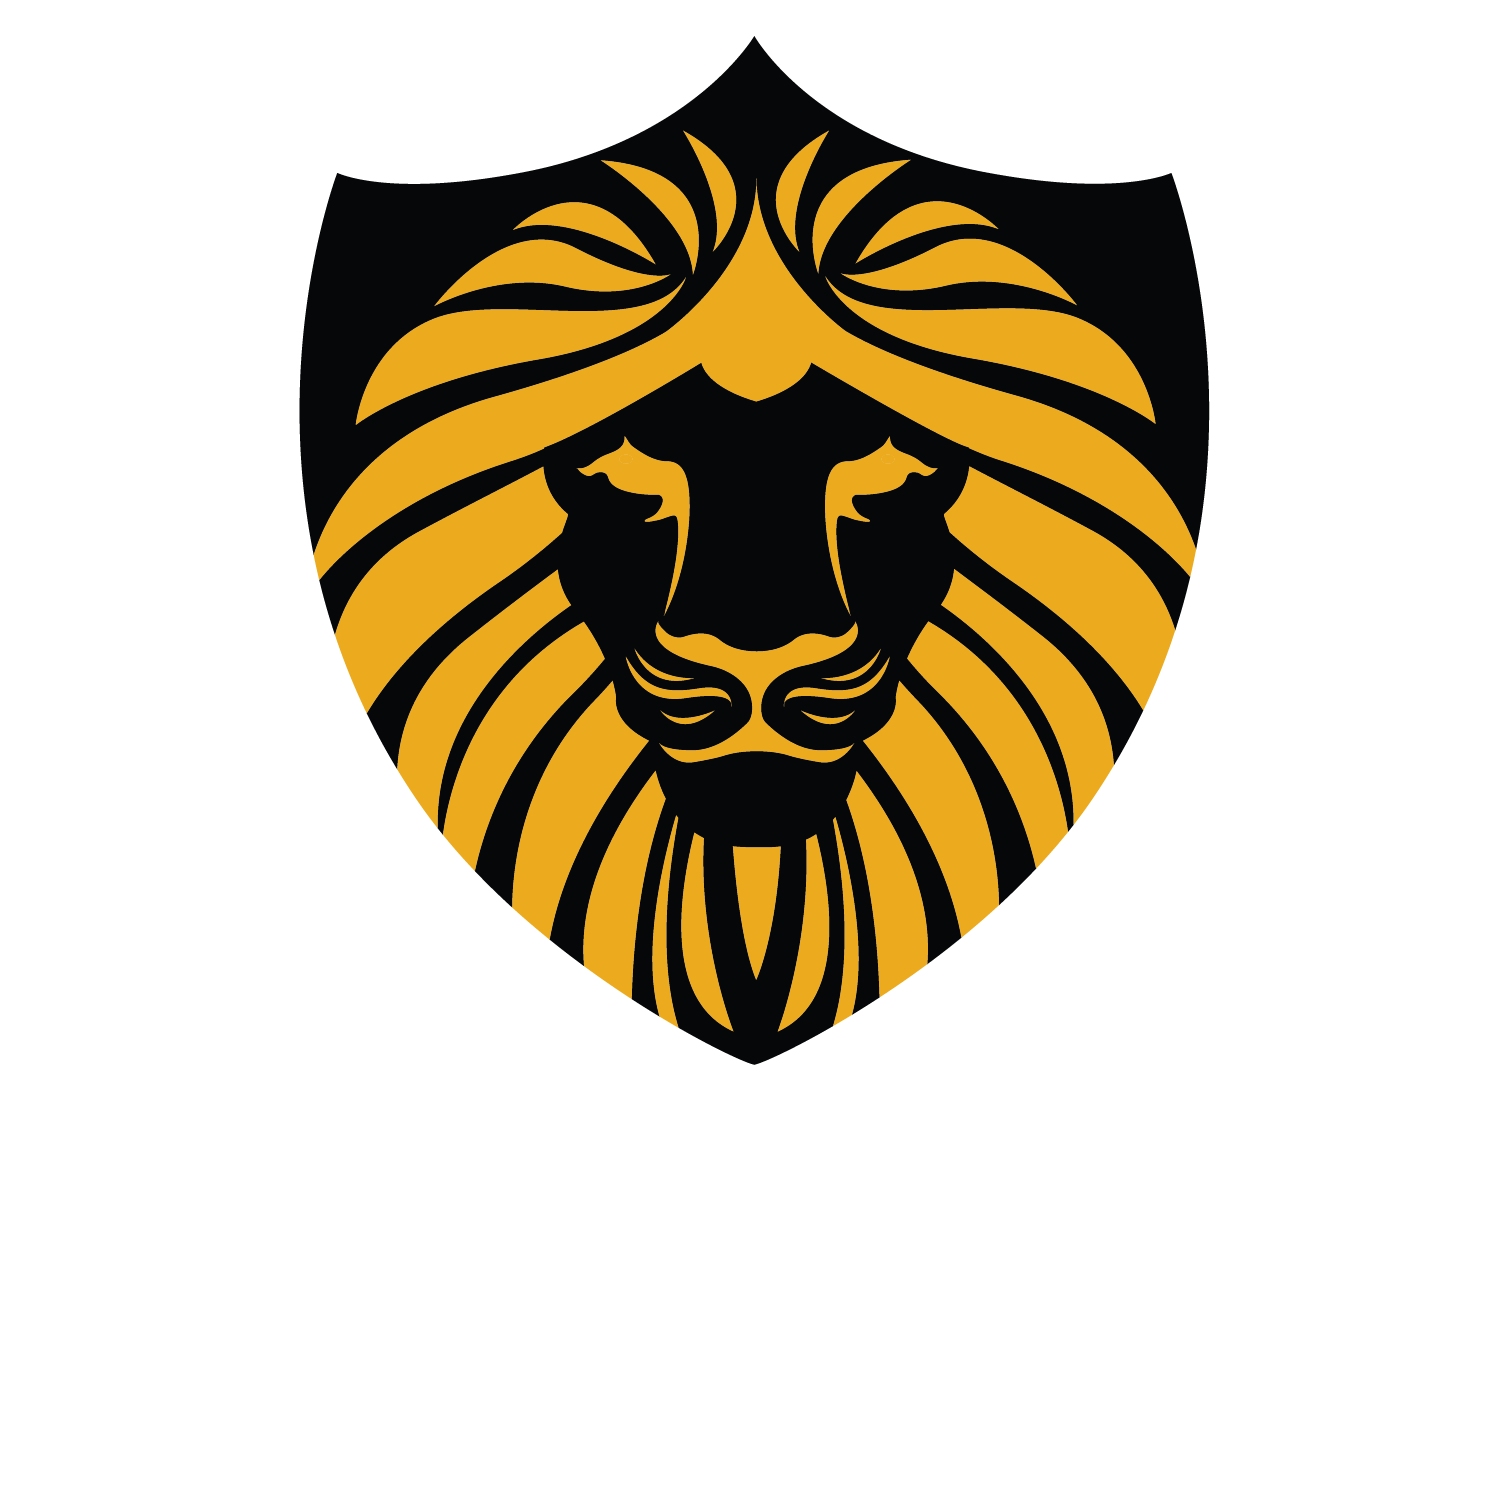 VENETO CYCLING CLUB